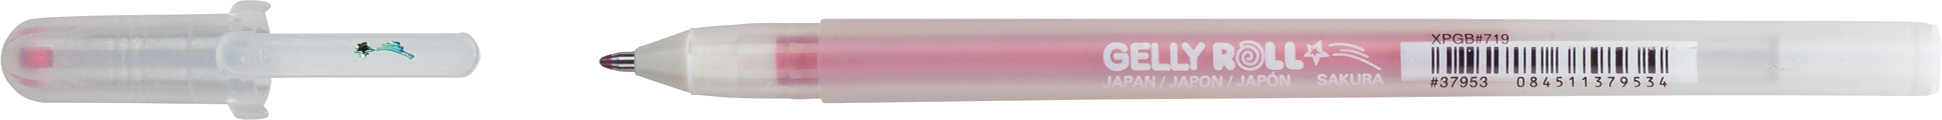 SAKURA Gelly Roll 0.5mm XPGB719 Stardust rot Glitter